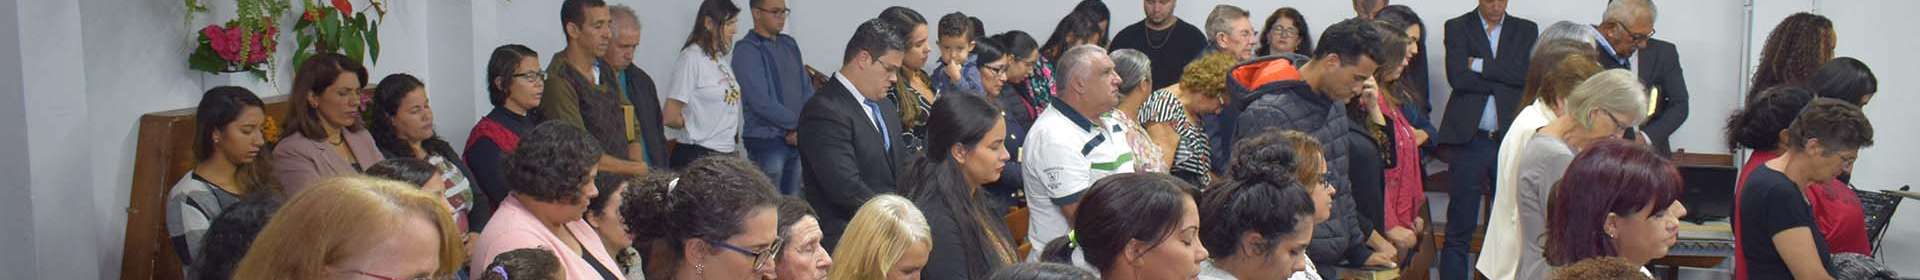 Igreja Cristã Maranata consagra novo templo em Curitiba (PR)